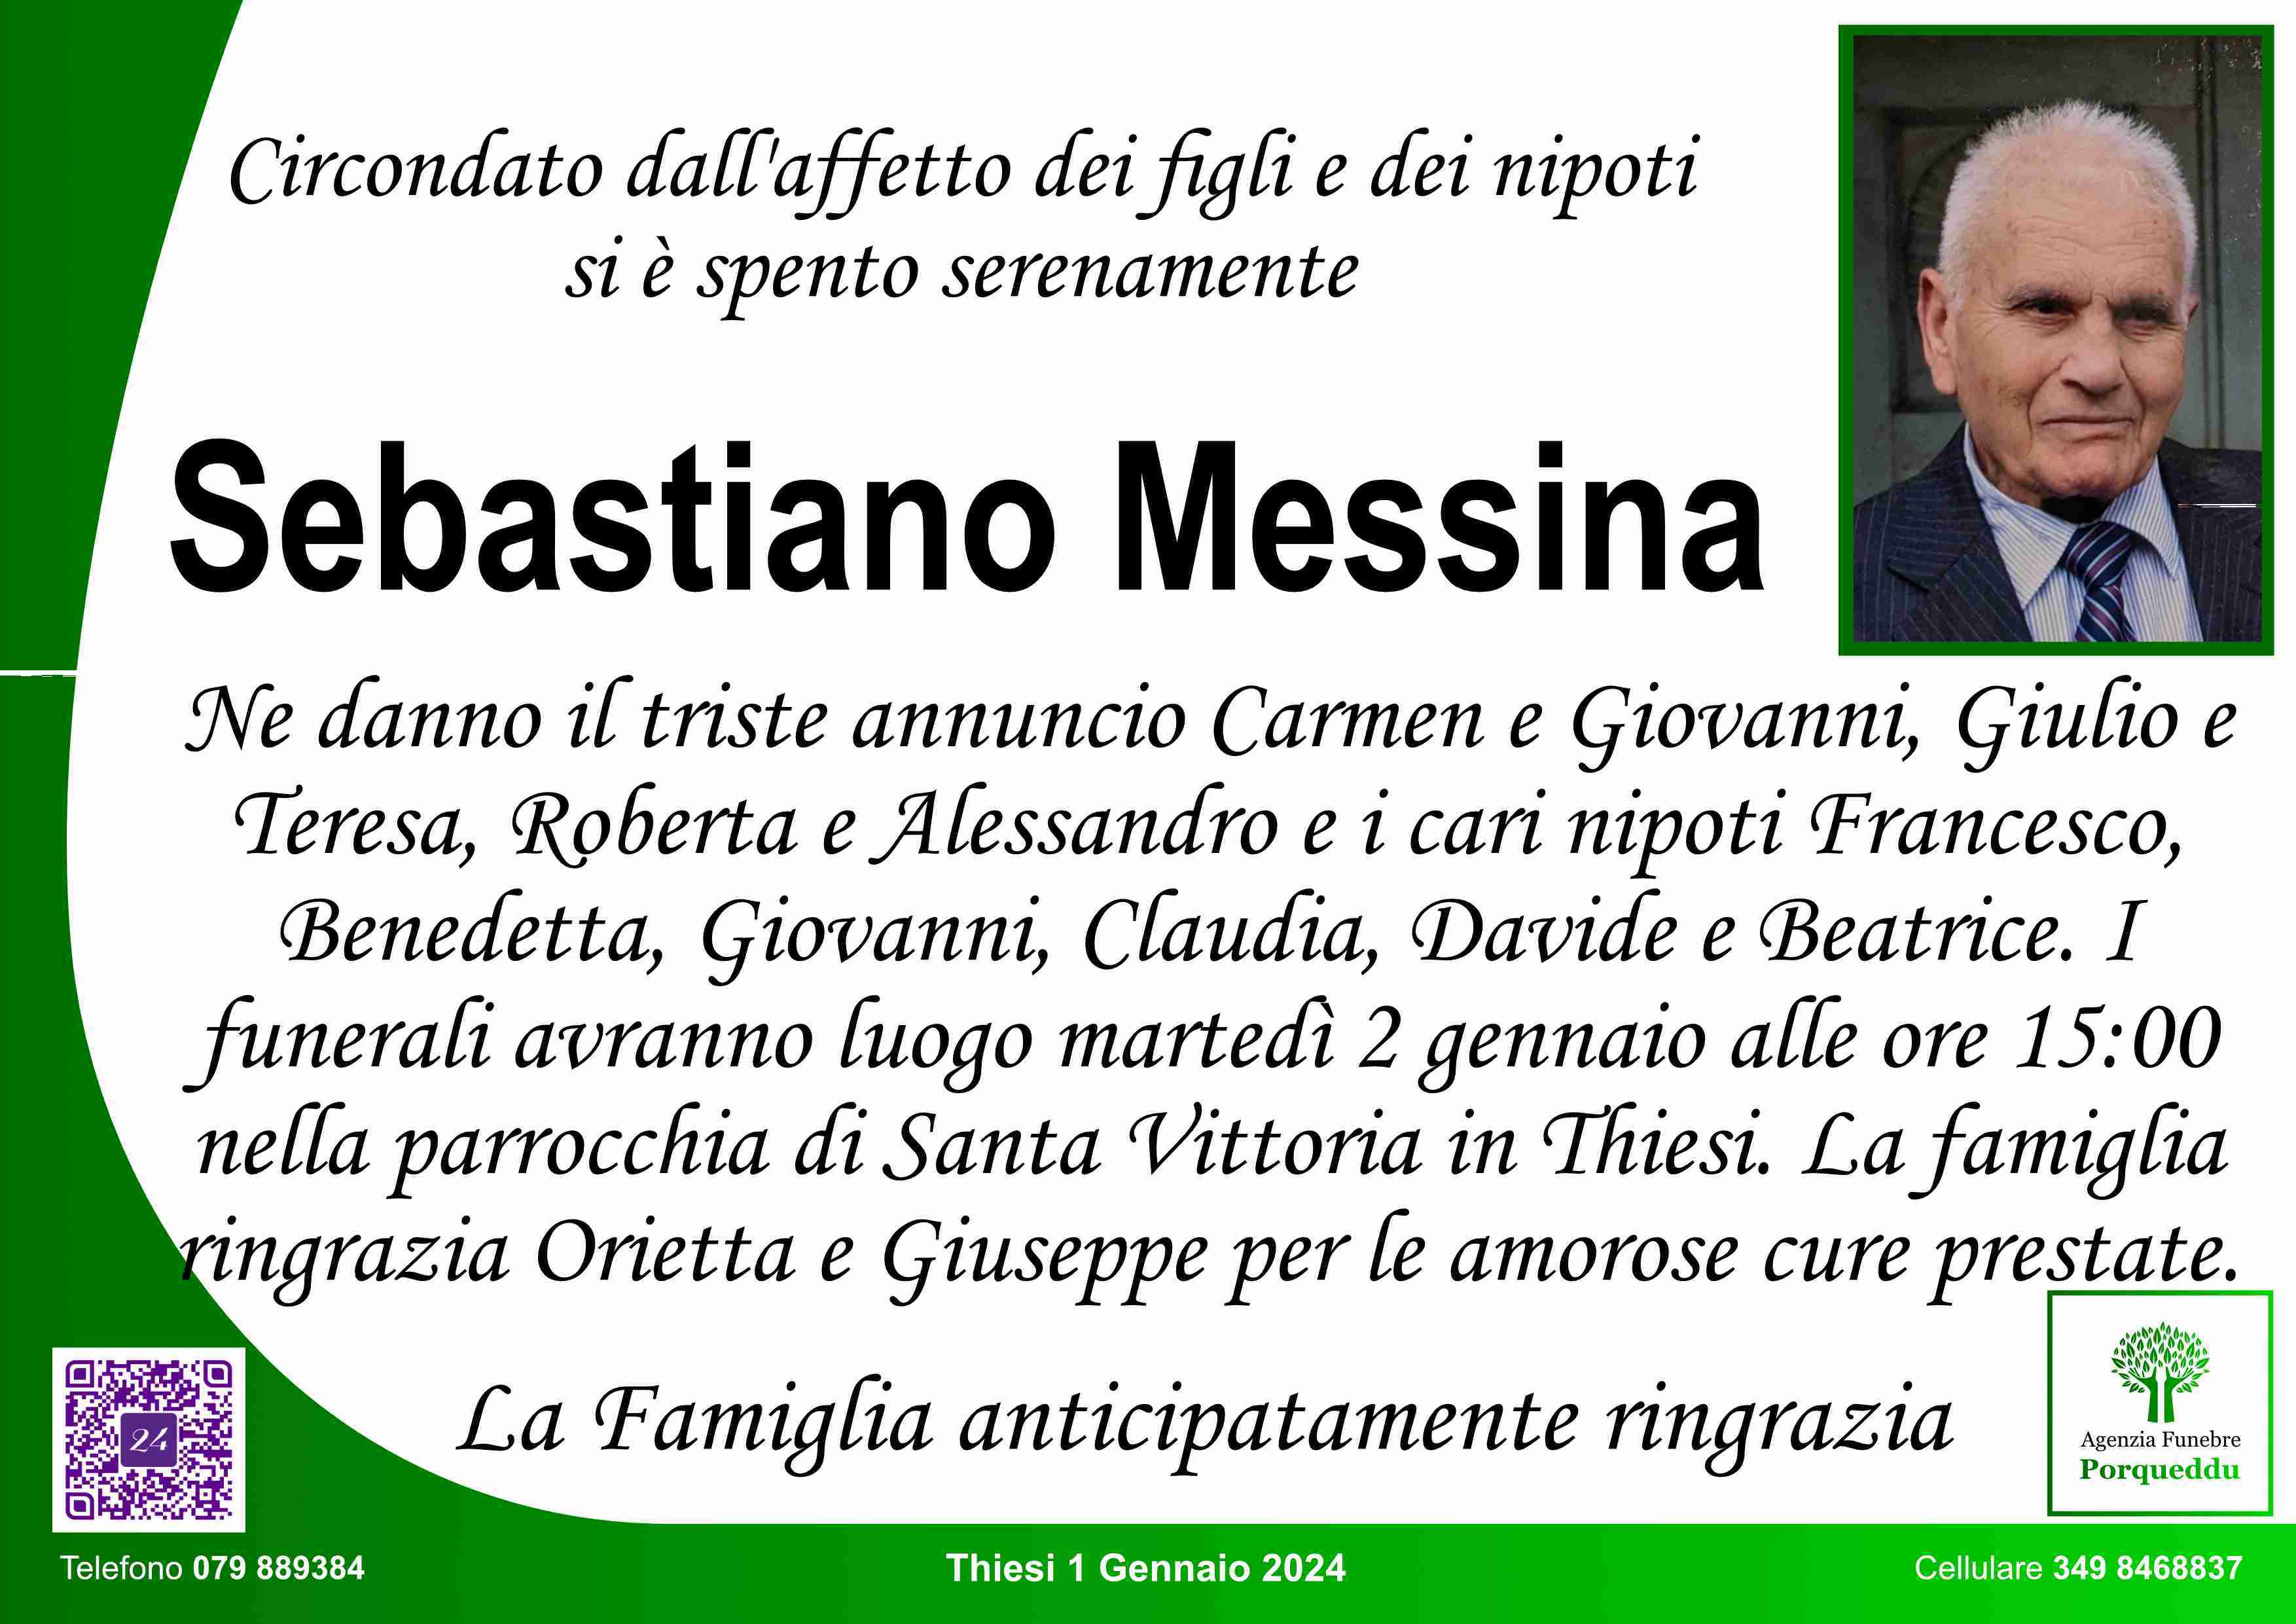 Sebastiano Messina